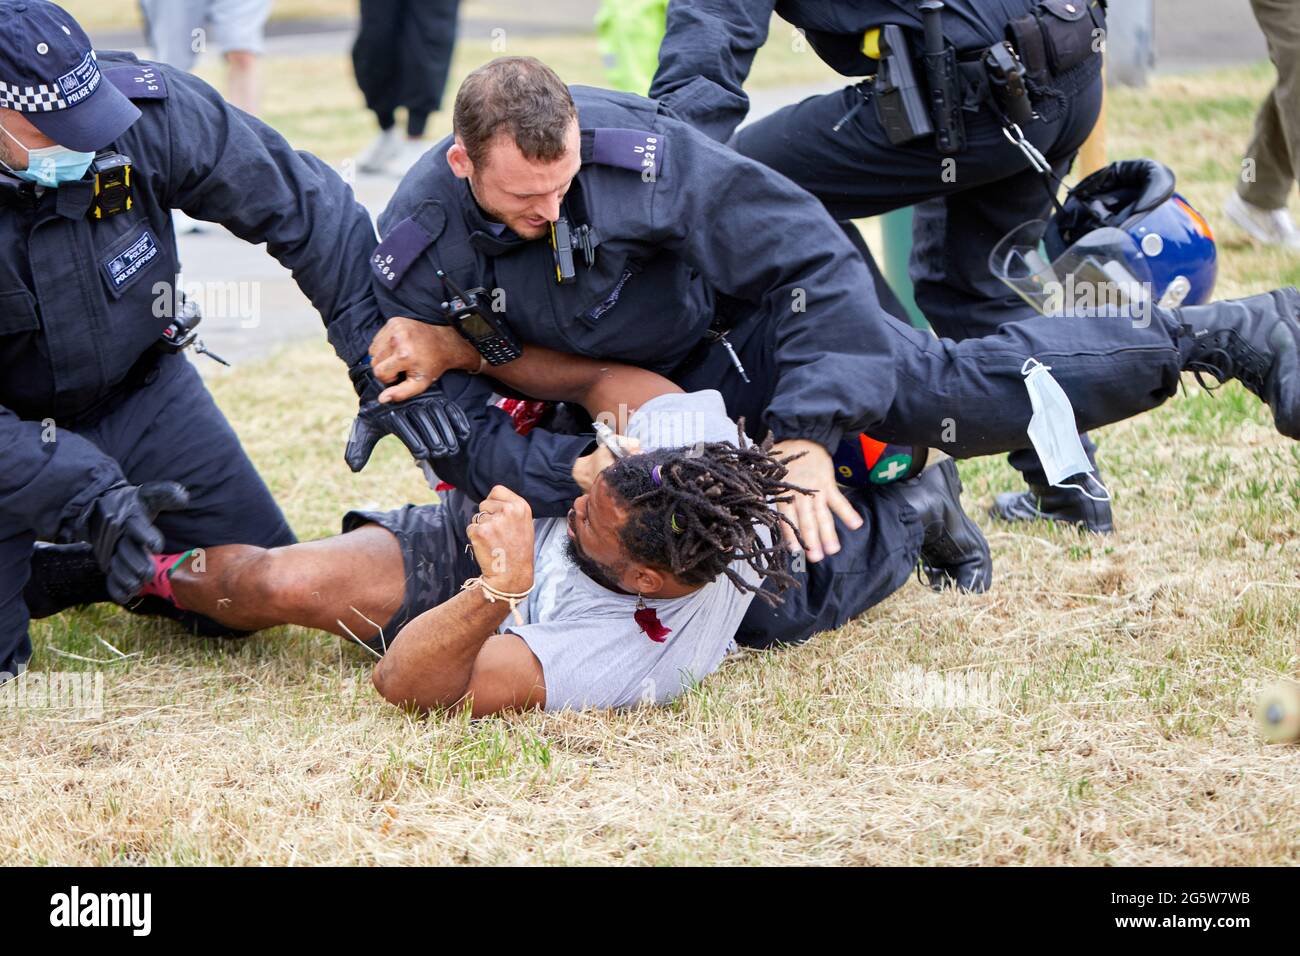 Londres, Reino Unido - 17 de junio de 2021: Un manifestante es atacado al suelo por la policía tras el desalojo del amoroso campo anti-encierro en Shepherds Bush Green. Foto de stock